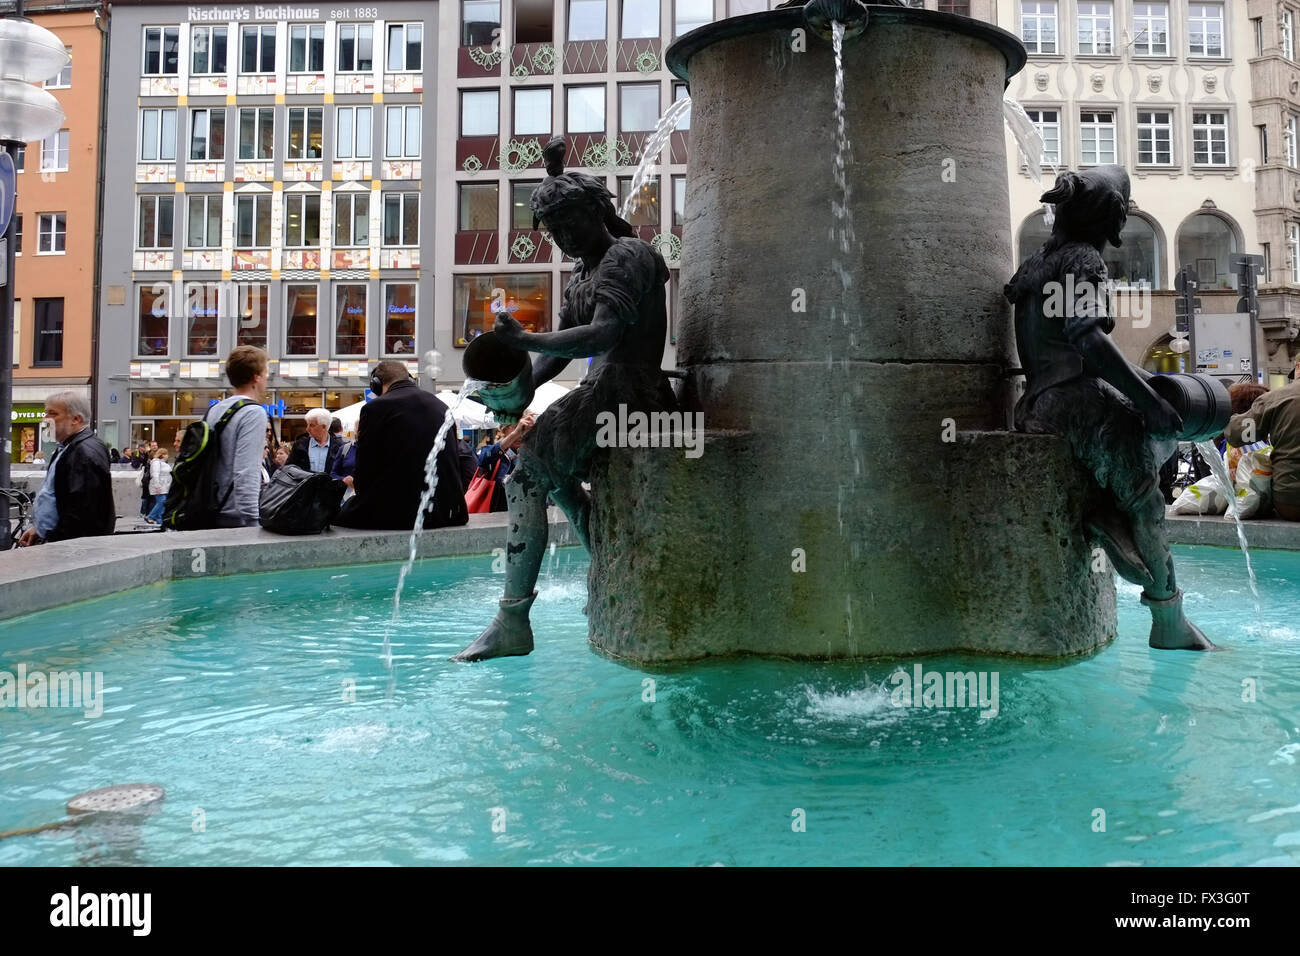 The Fischbrunnen Fountain in Marienplatz, Munich, Bavaria, Germany, Europe. Stock Photo